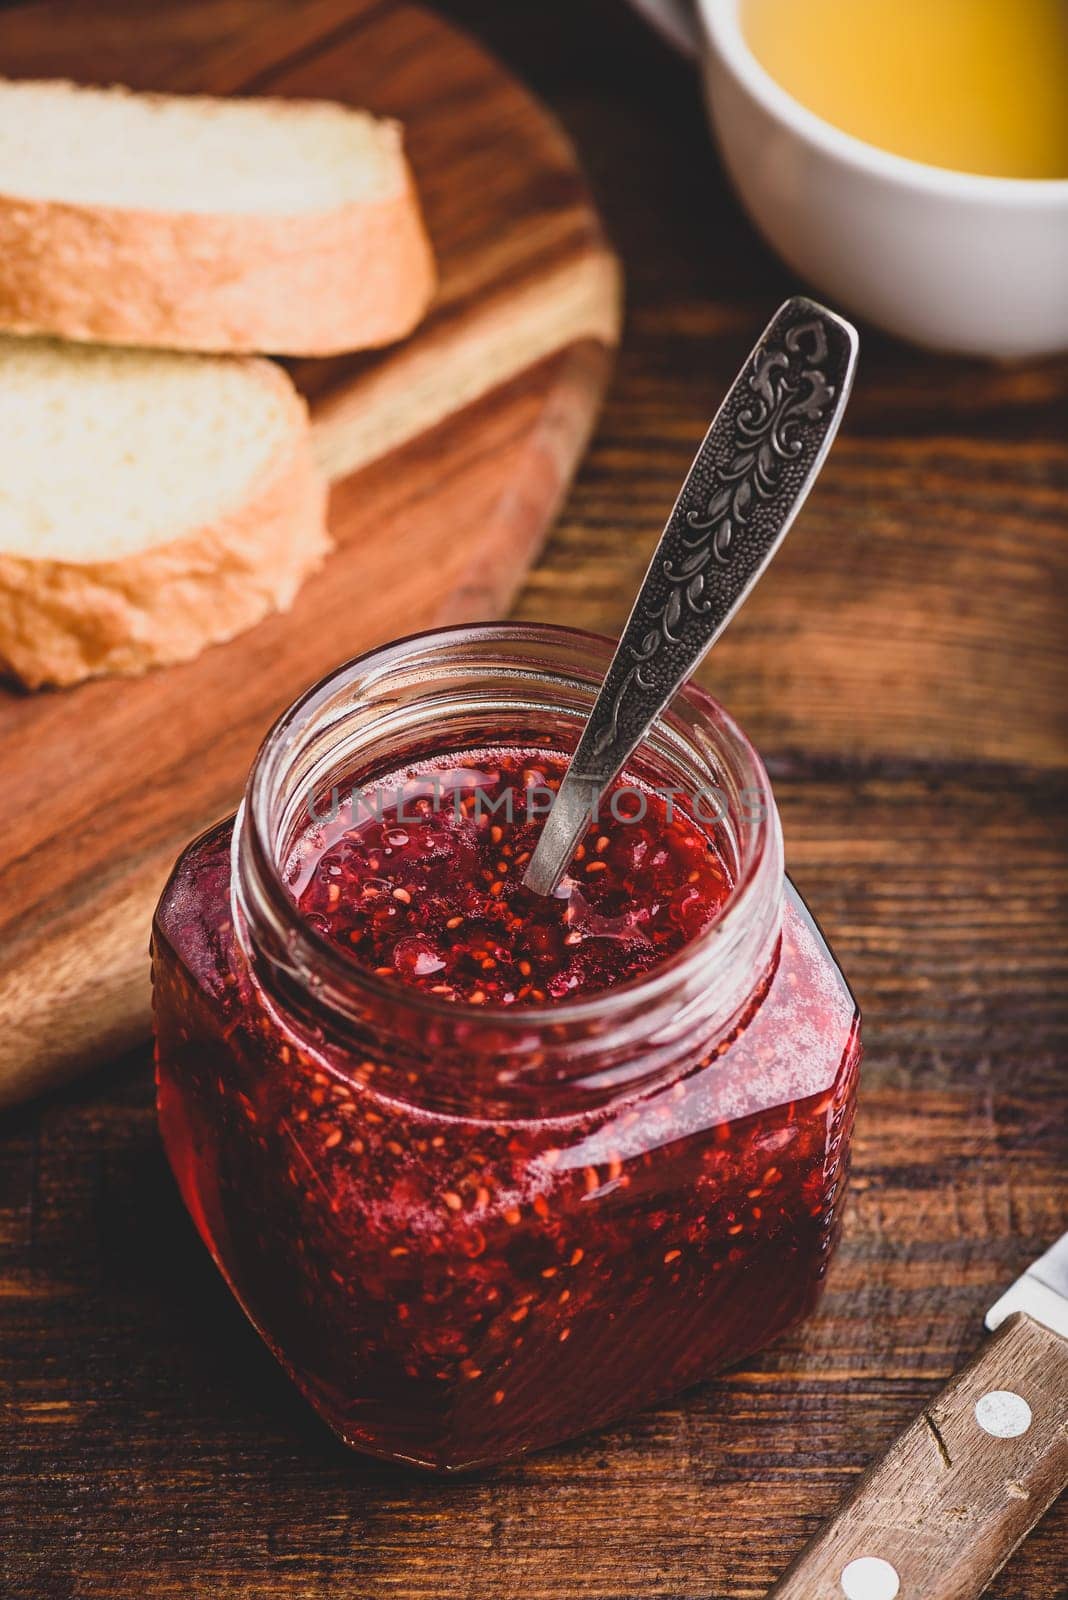 Jar of homemade raspberry jam by Seva_blsv